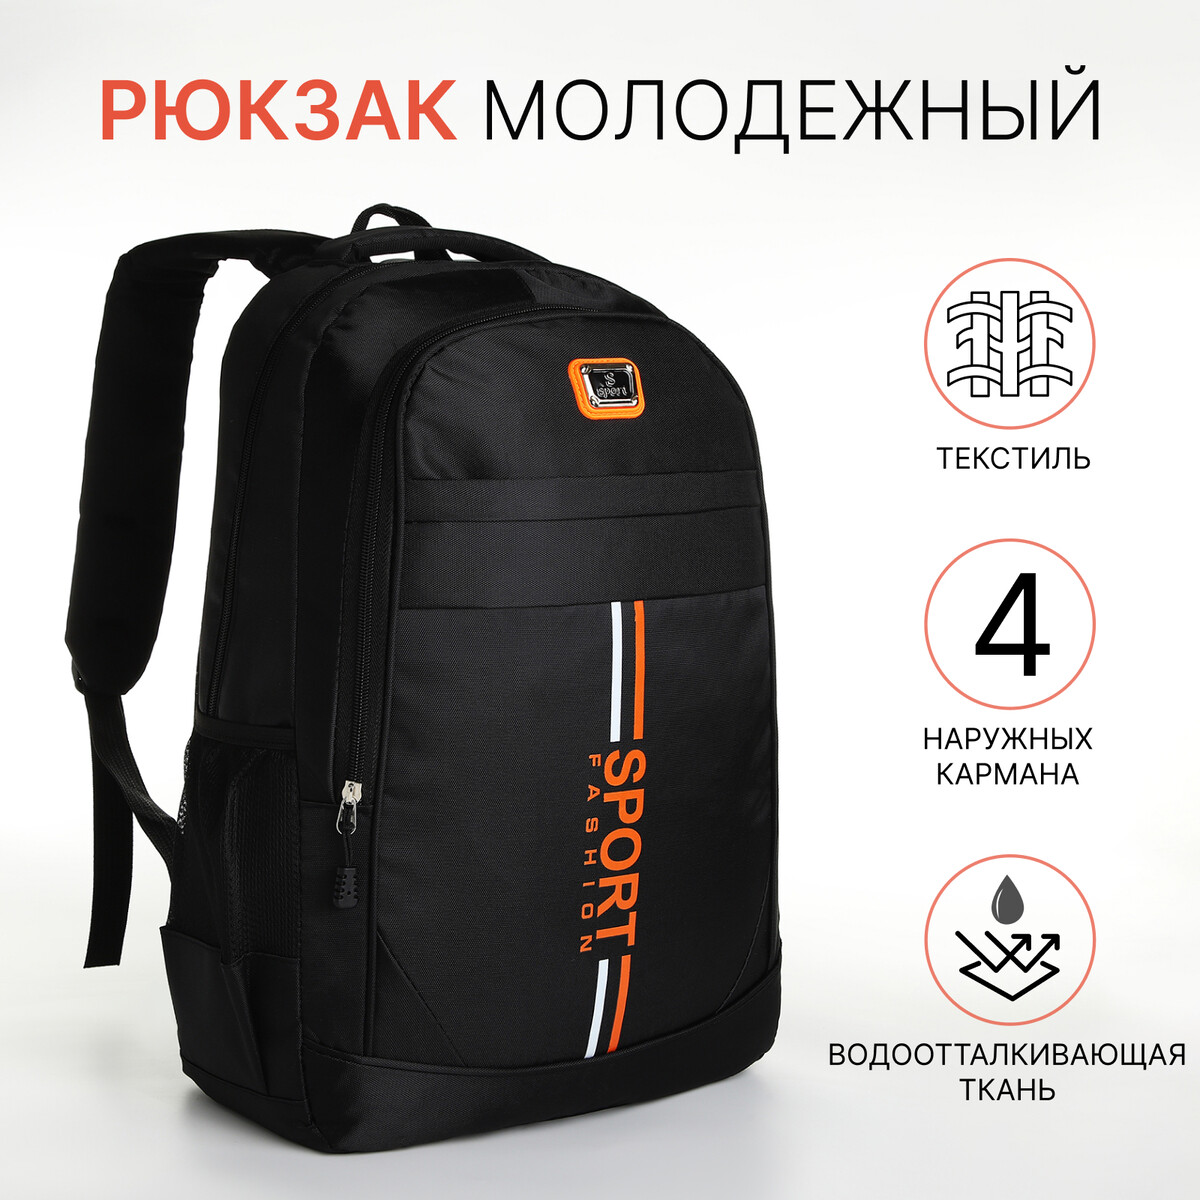 Рюкзак молодежный на молнии, 4 кармана, цвет черный/оранжевый рюкзак школьный из текстиля на молнии 4 кармана кошелек серый оранжевый